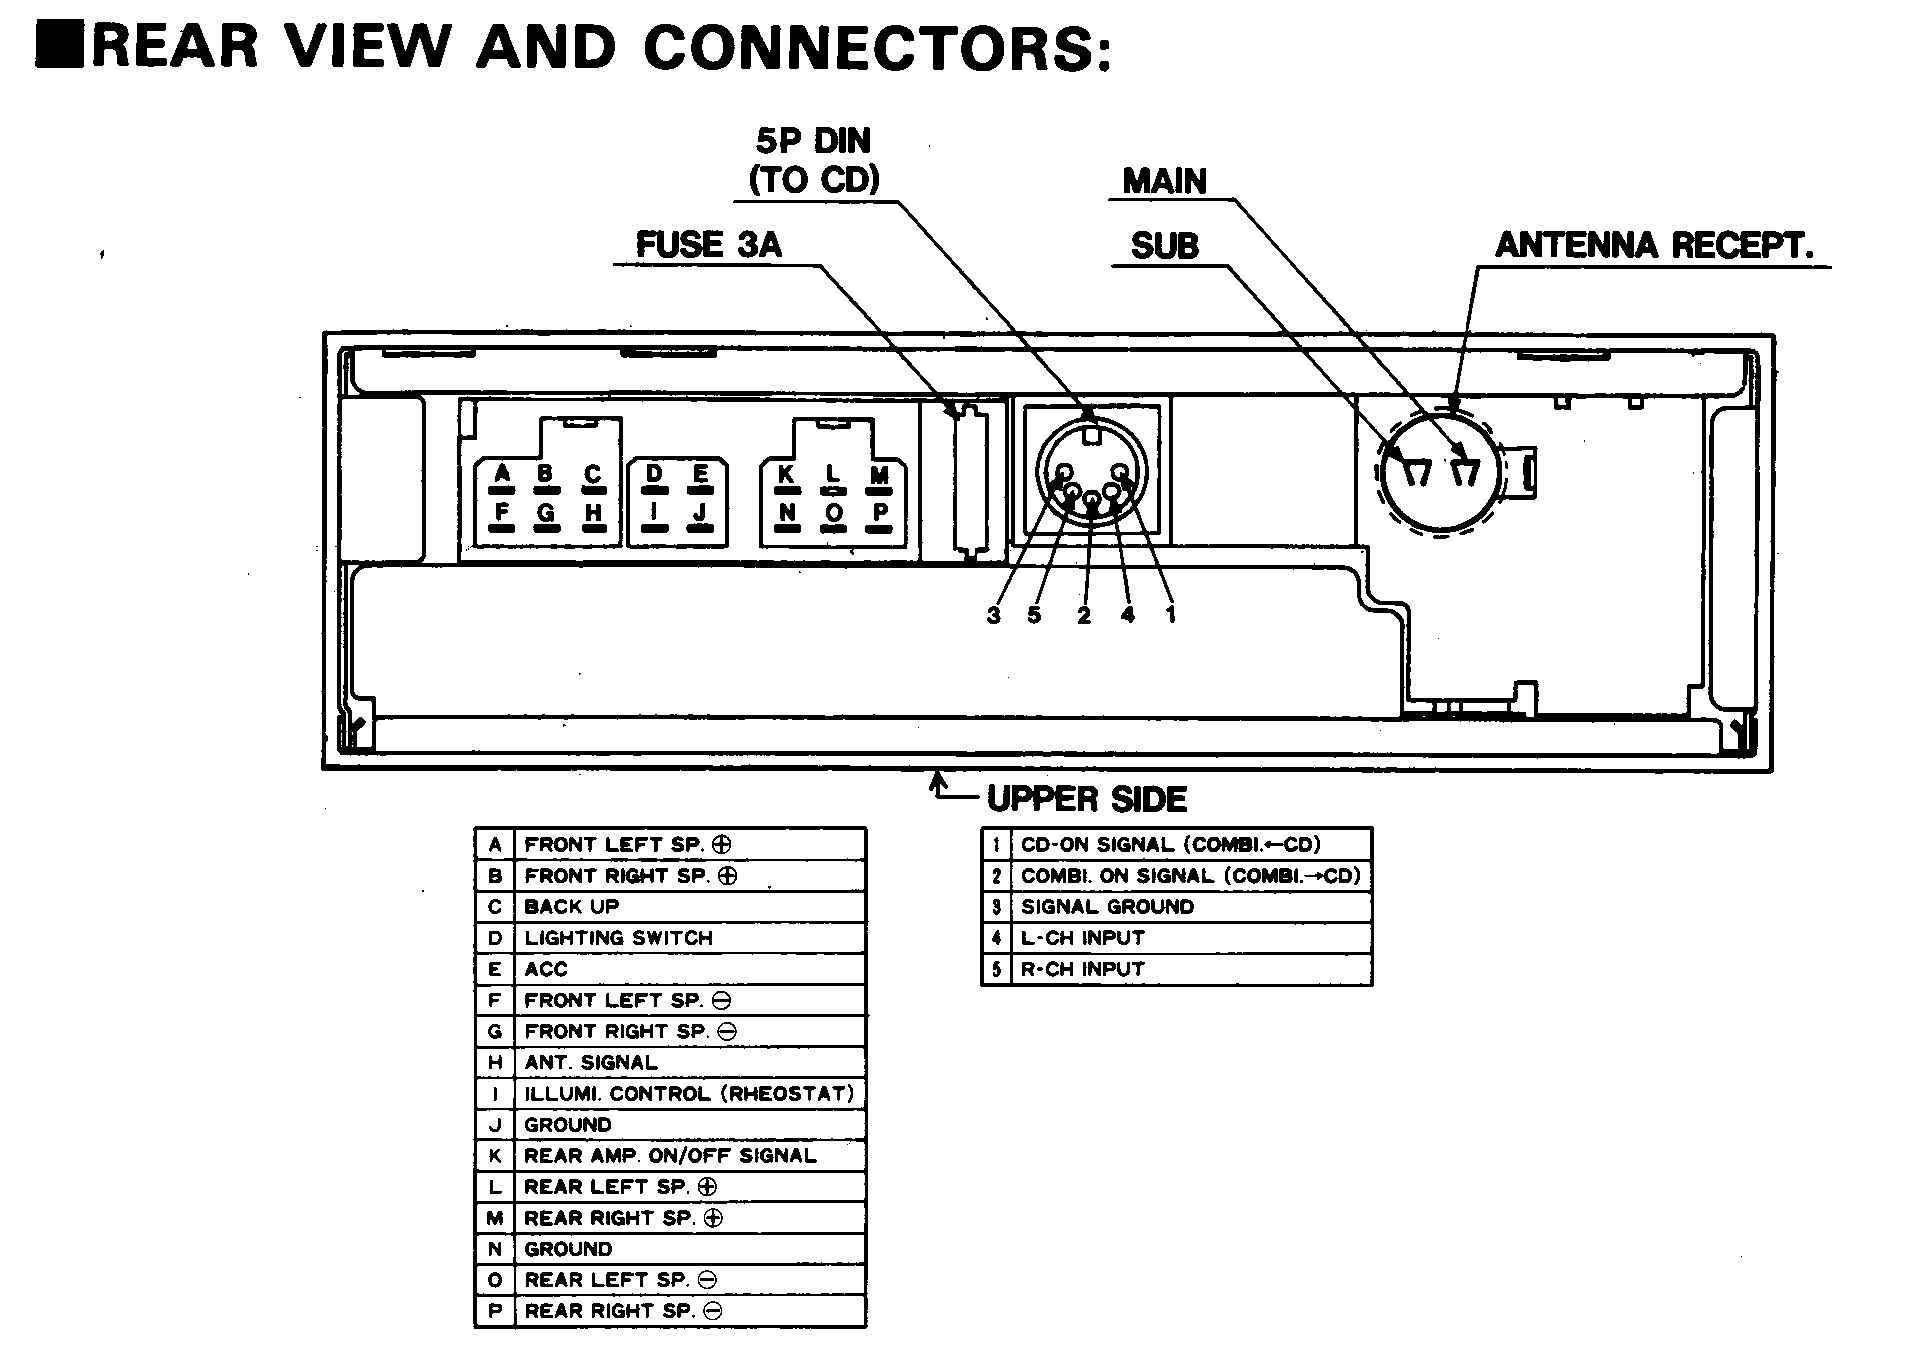 1999 Infiniti I30 Engine Diagram Infiniti I30 Radio Wiring Diagram Get Free Image About Wiring Of 1999 Infiniti I30 Engine Diagram